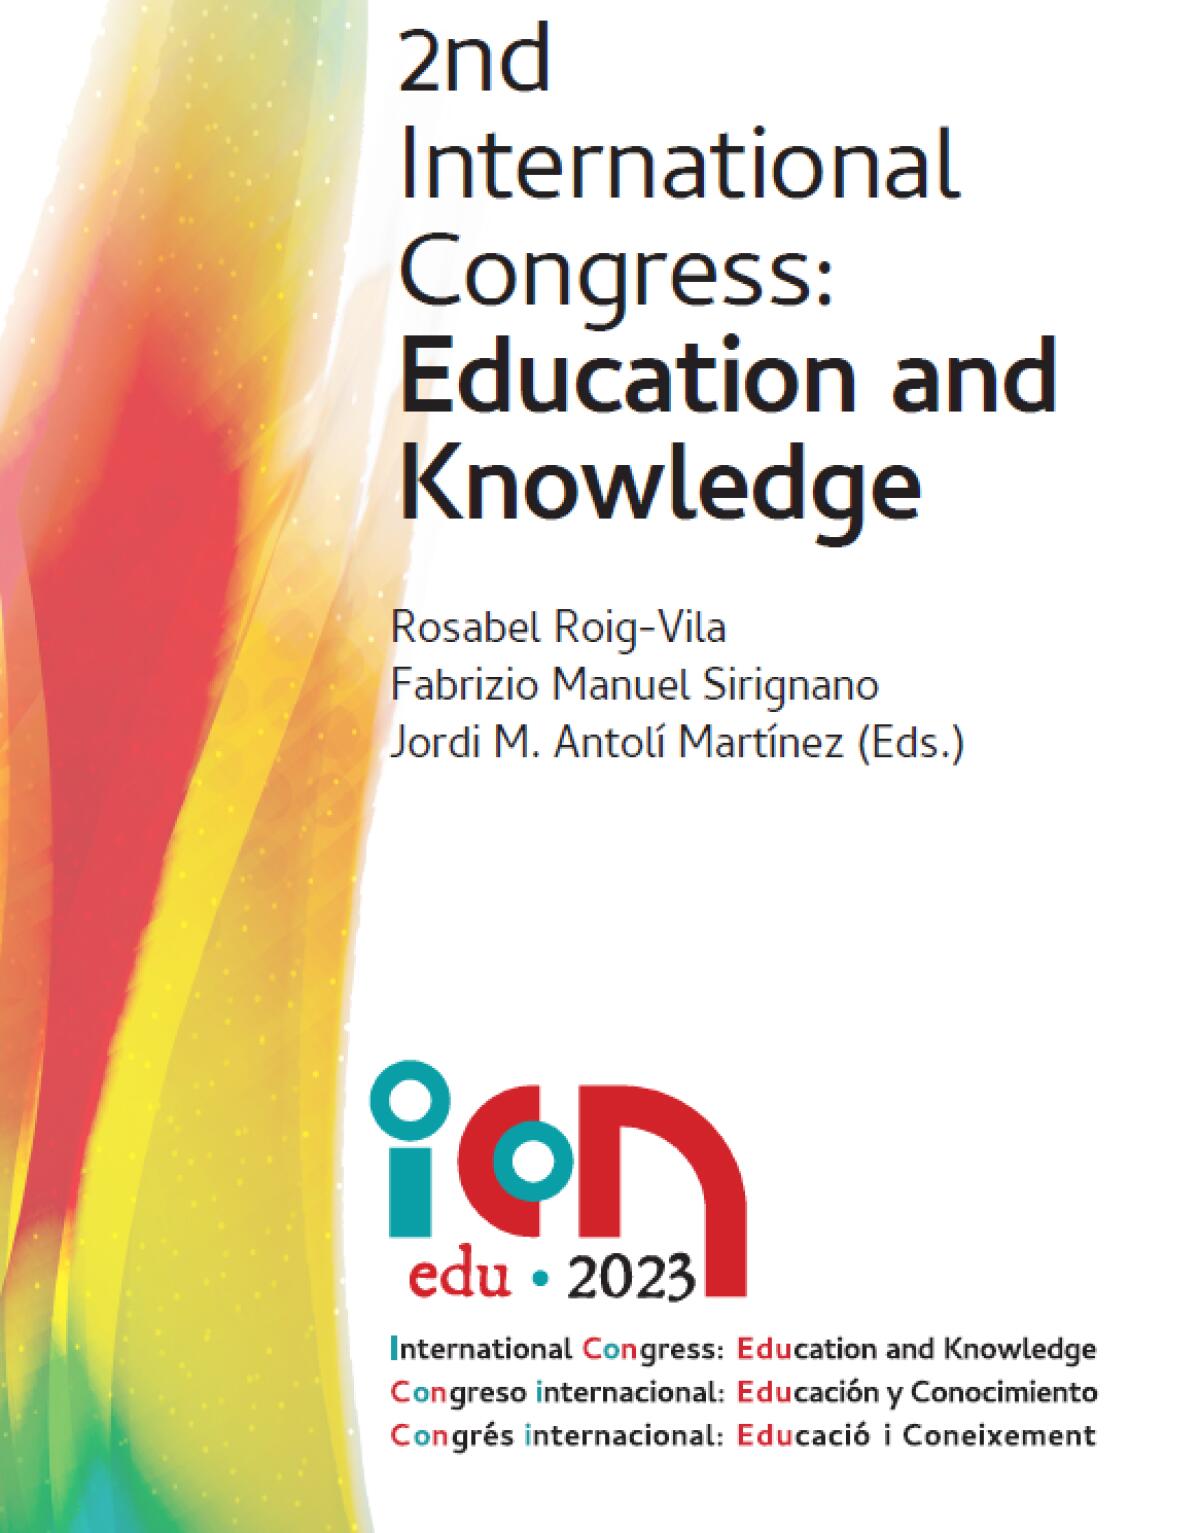 La Seu acoge el II Congreso Internacional de Educación este viernes